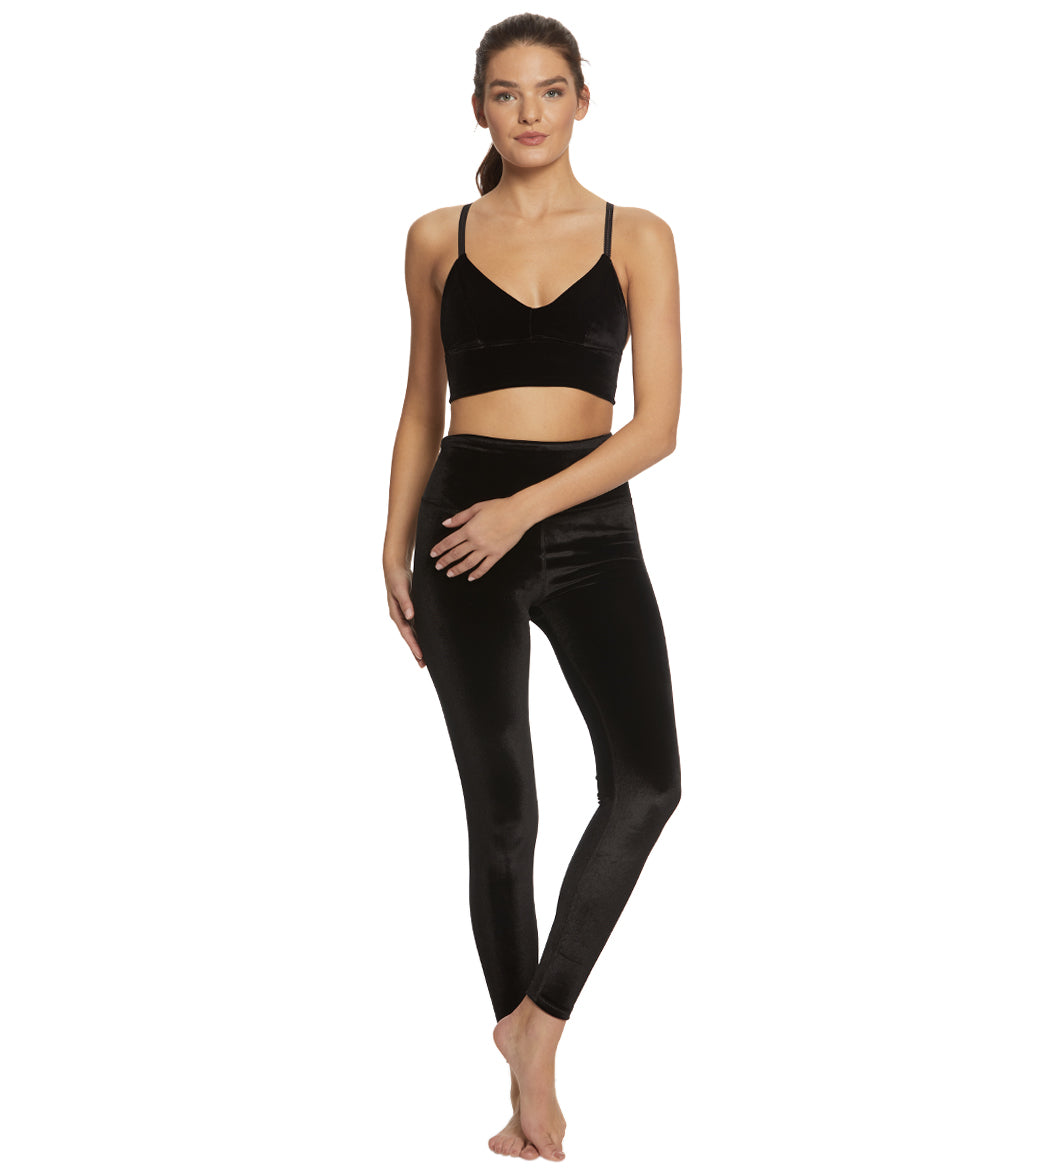 Velvet Yoga Pants: Luxury Velvet Yoga Leggings We Love